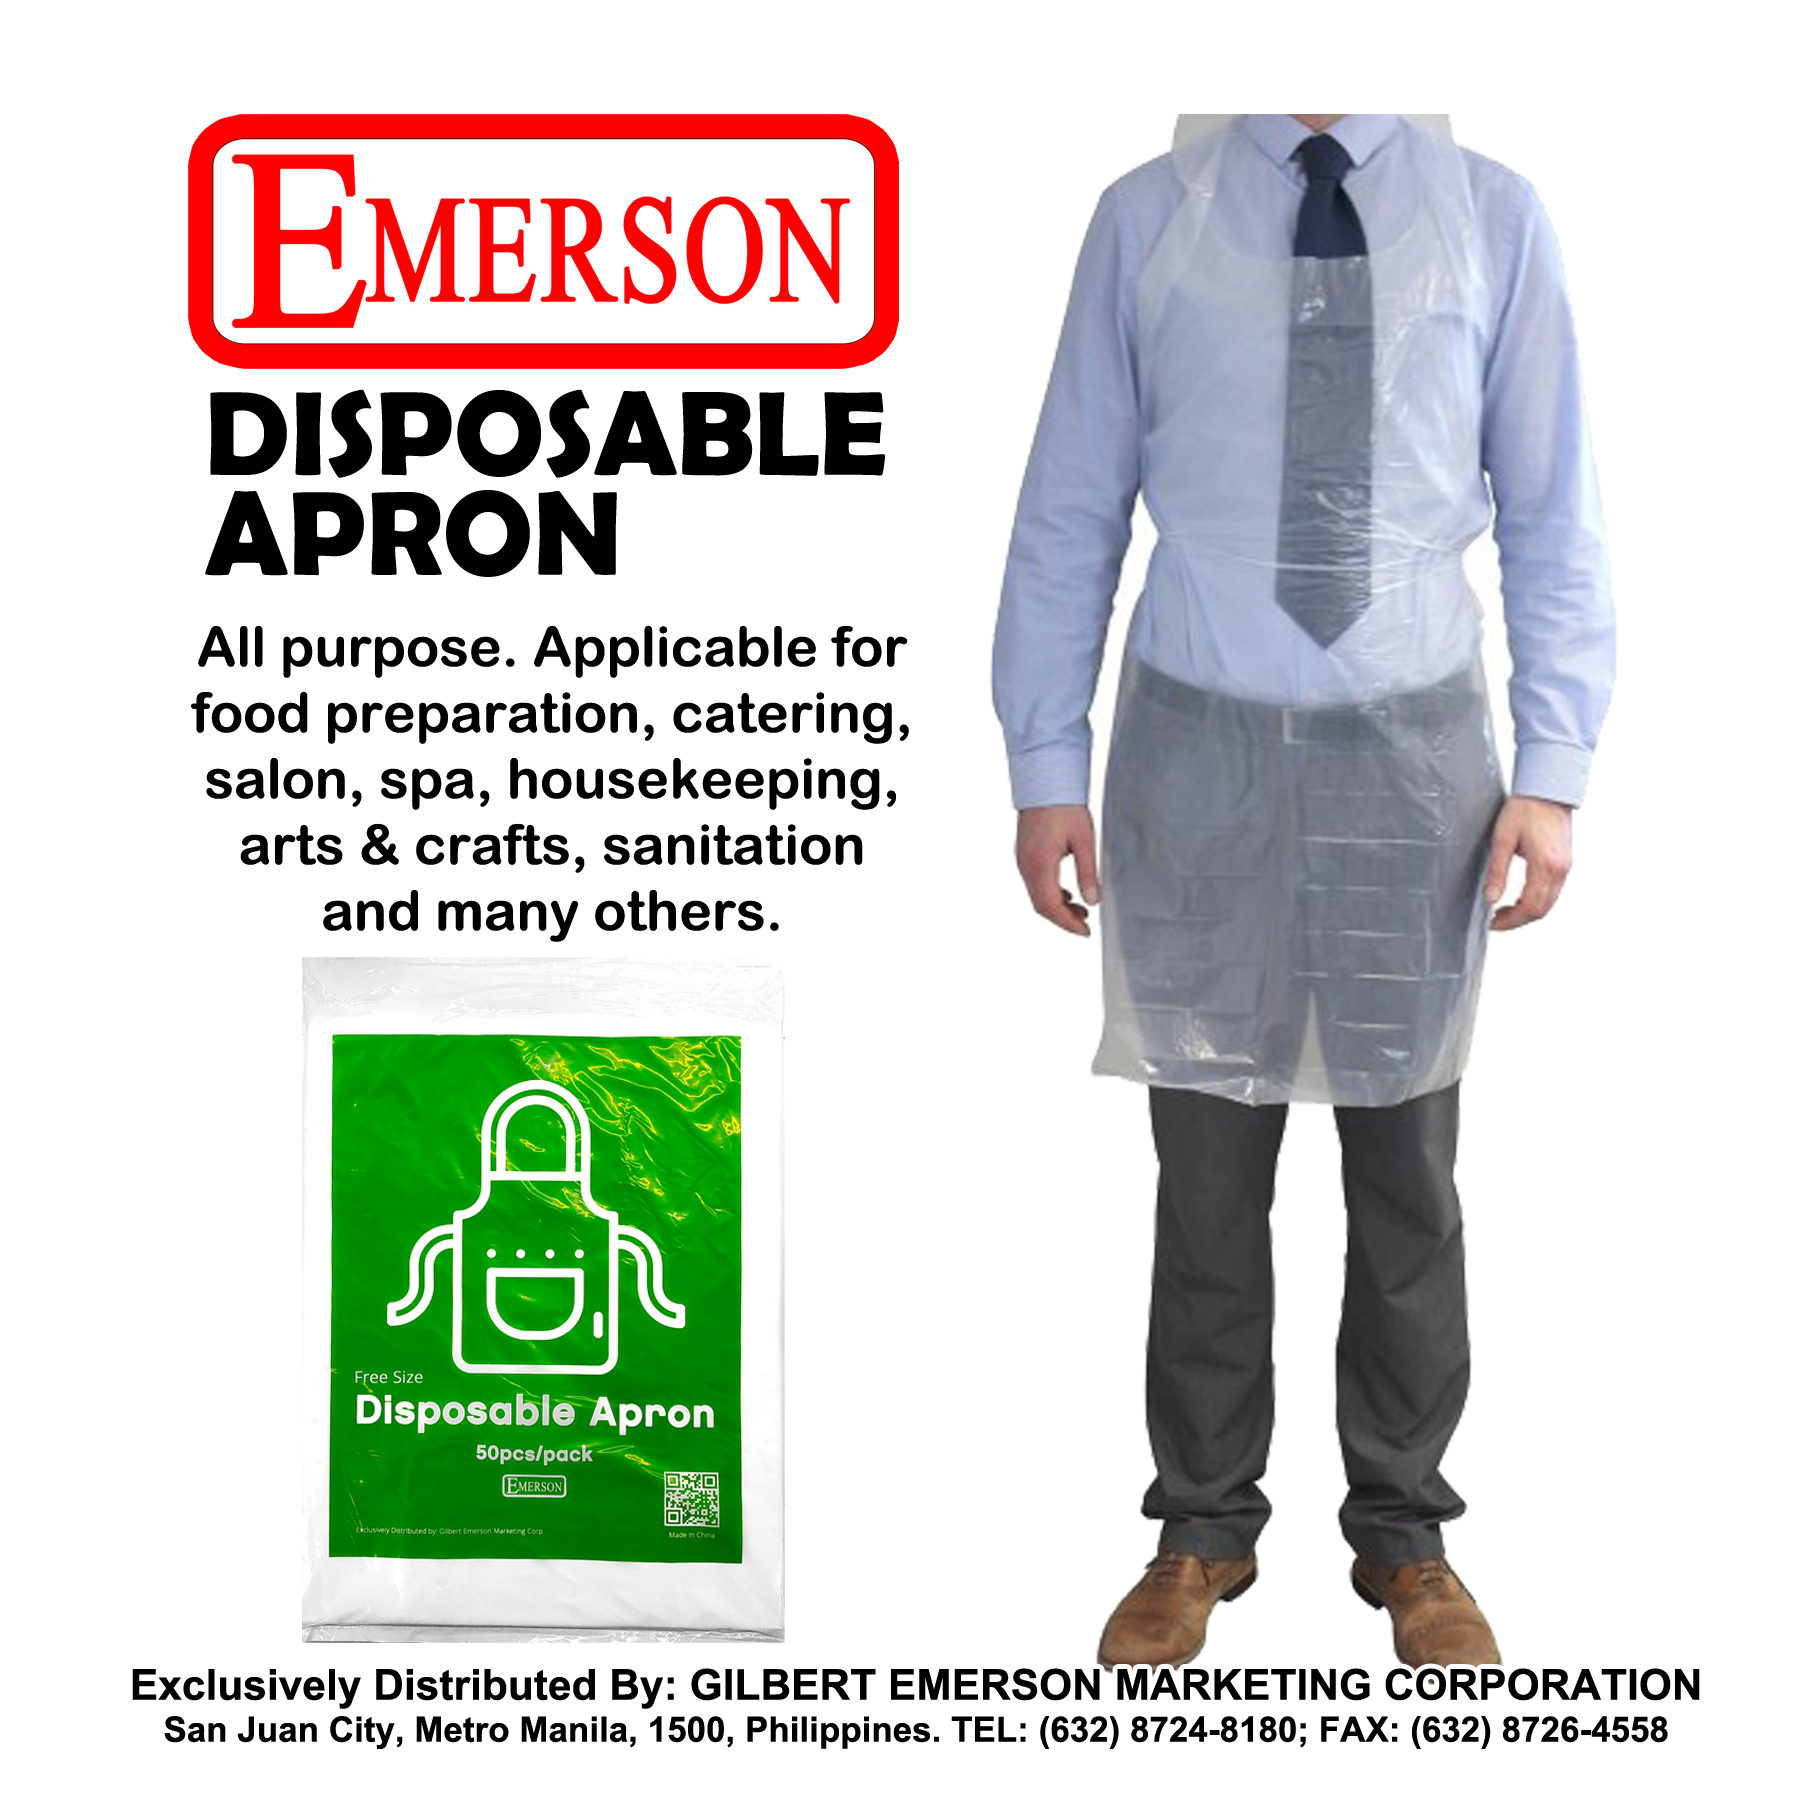 Emerson DISPOSABLE APRON (50pcs per pack)